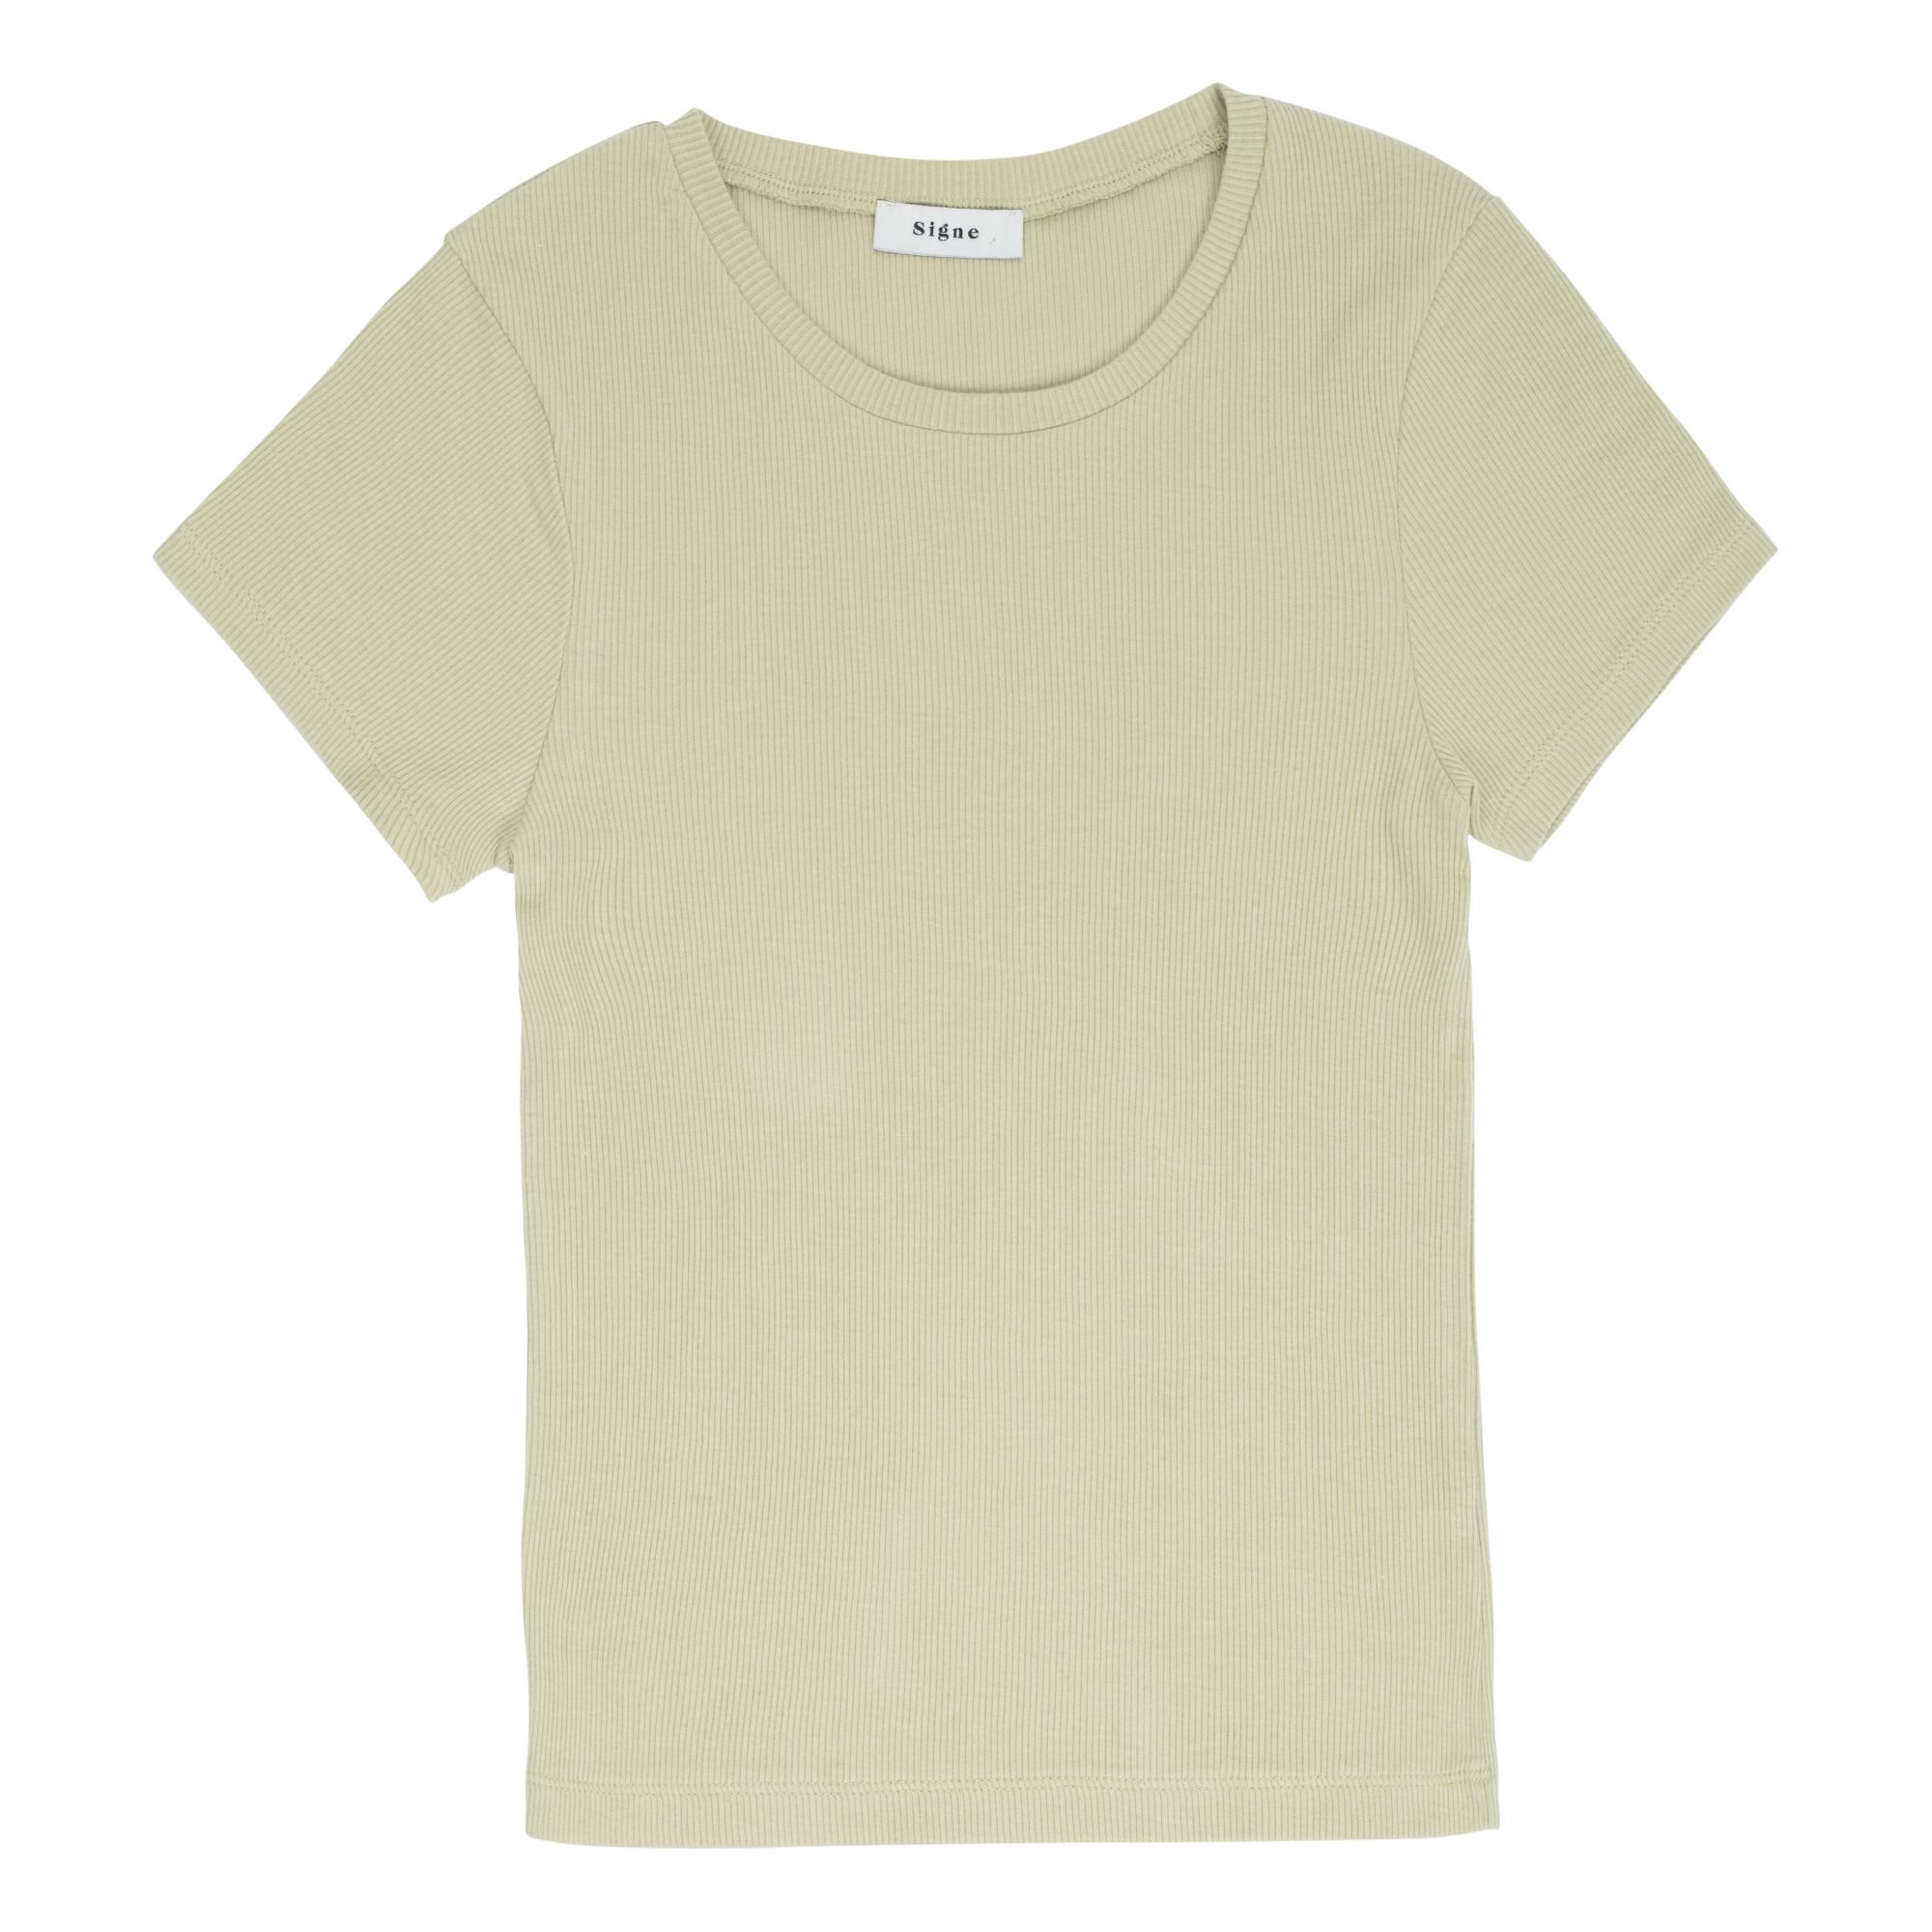 Signe - T-Shirt Lila Coton Bio - Femme - Vert pâle